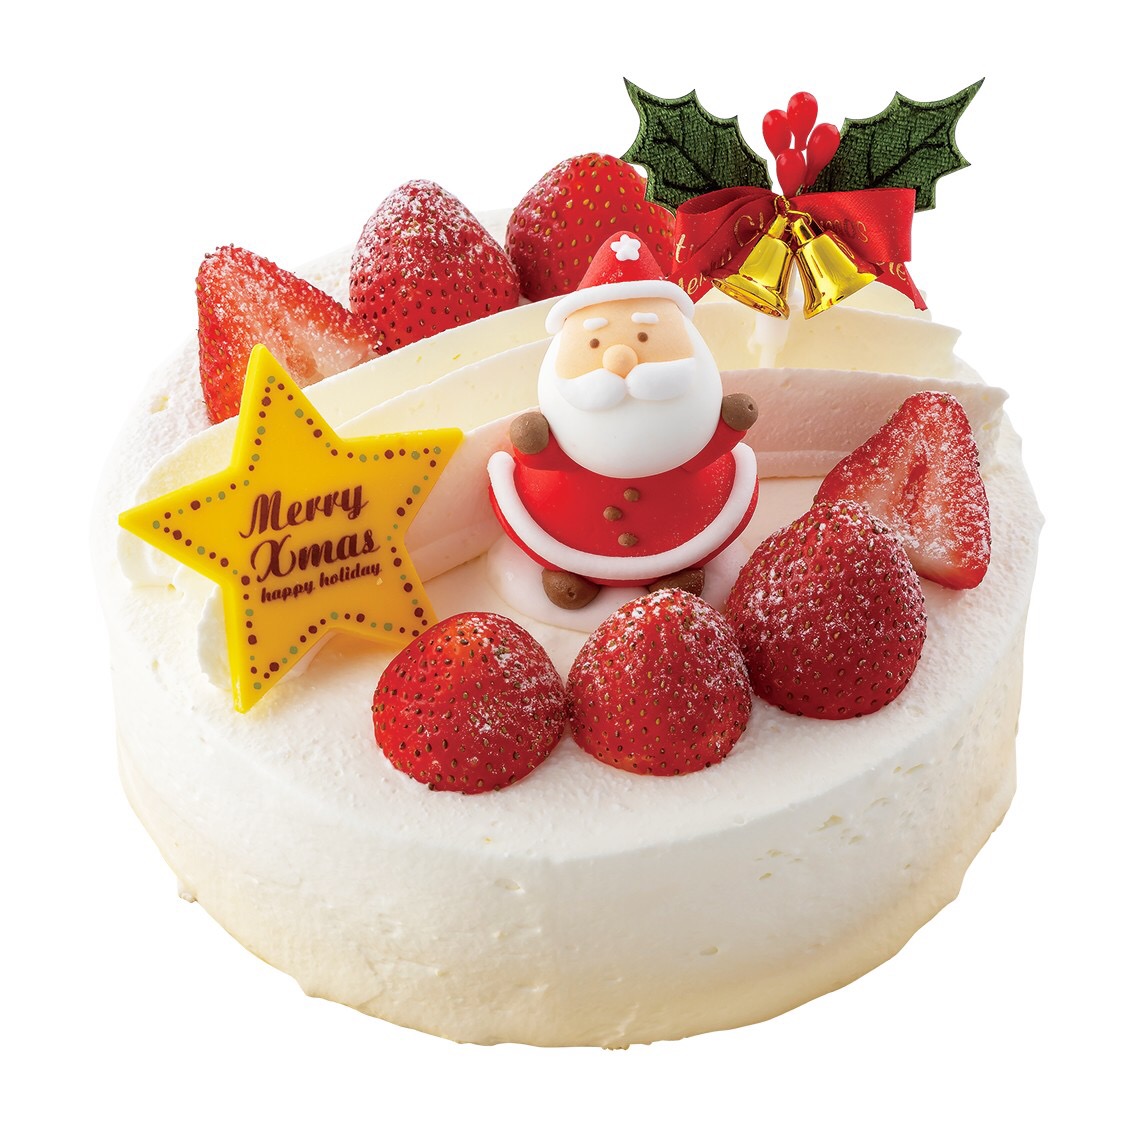 クリスマスケーキ2022 予約番号①番